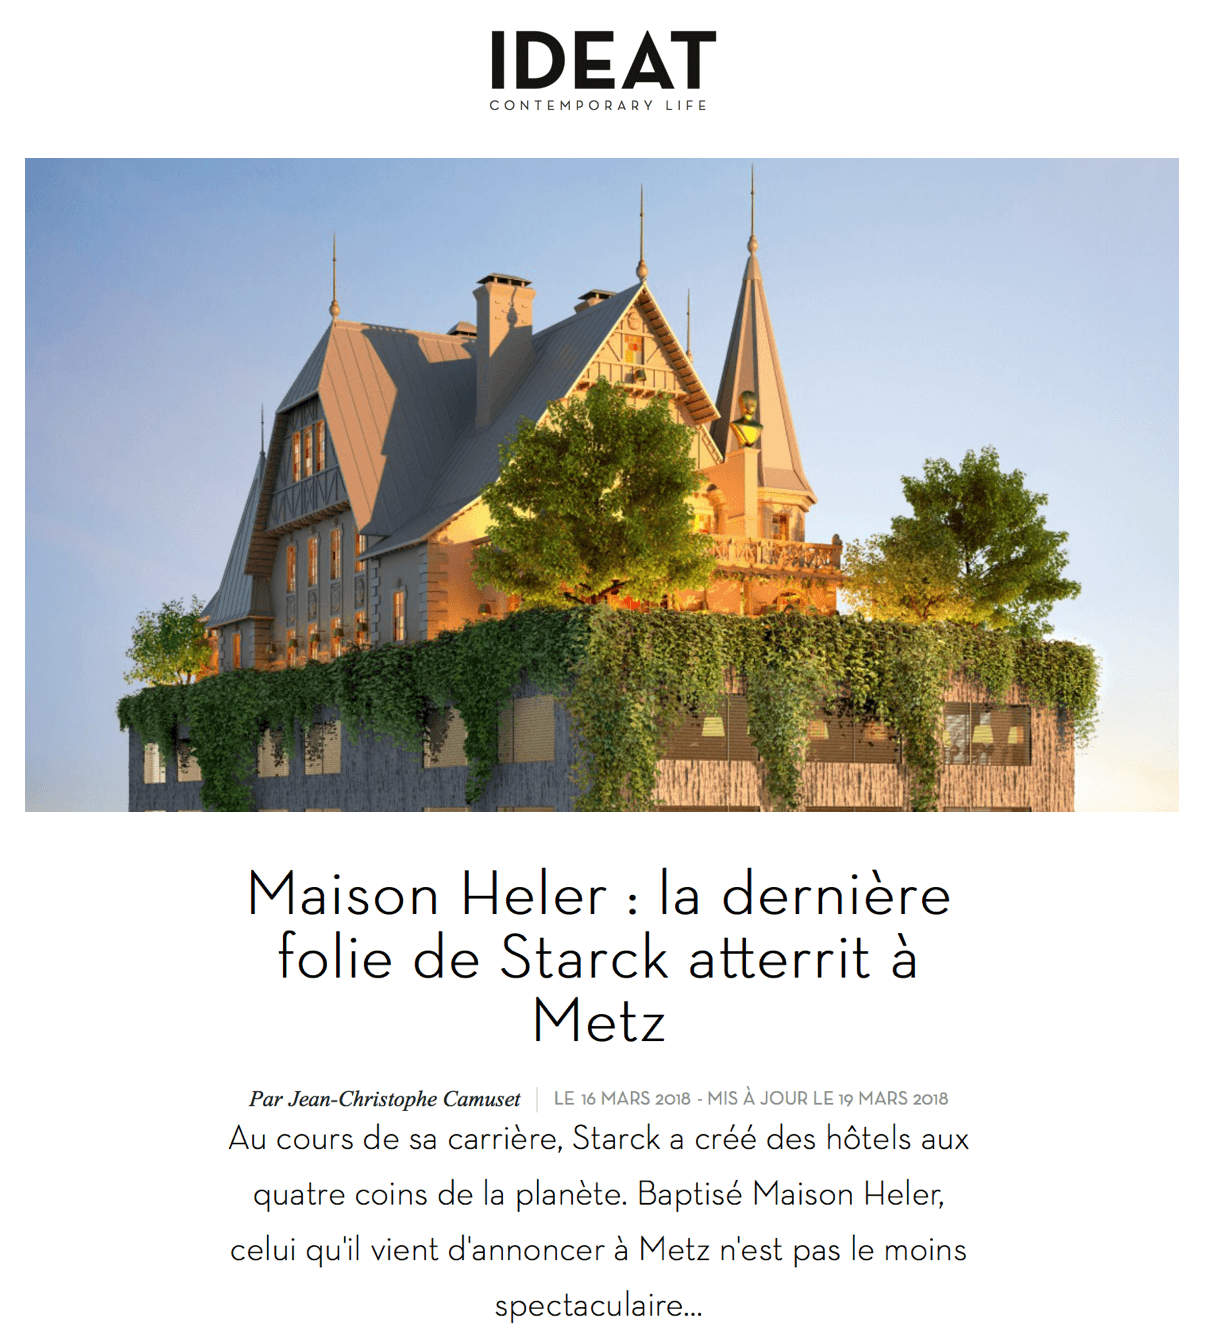 Maison Heler : la dernière folie de Starck atterrit à Metz